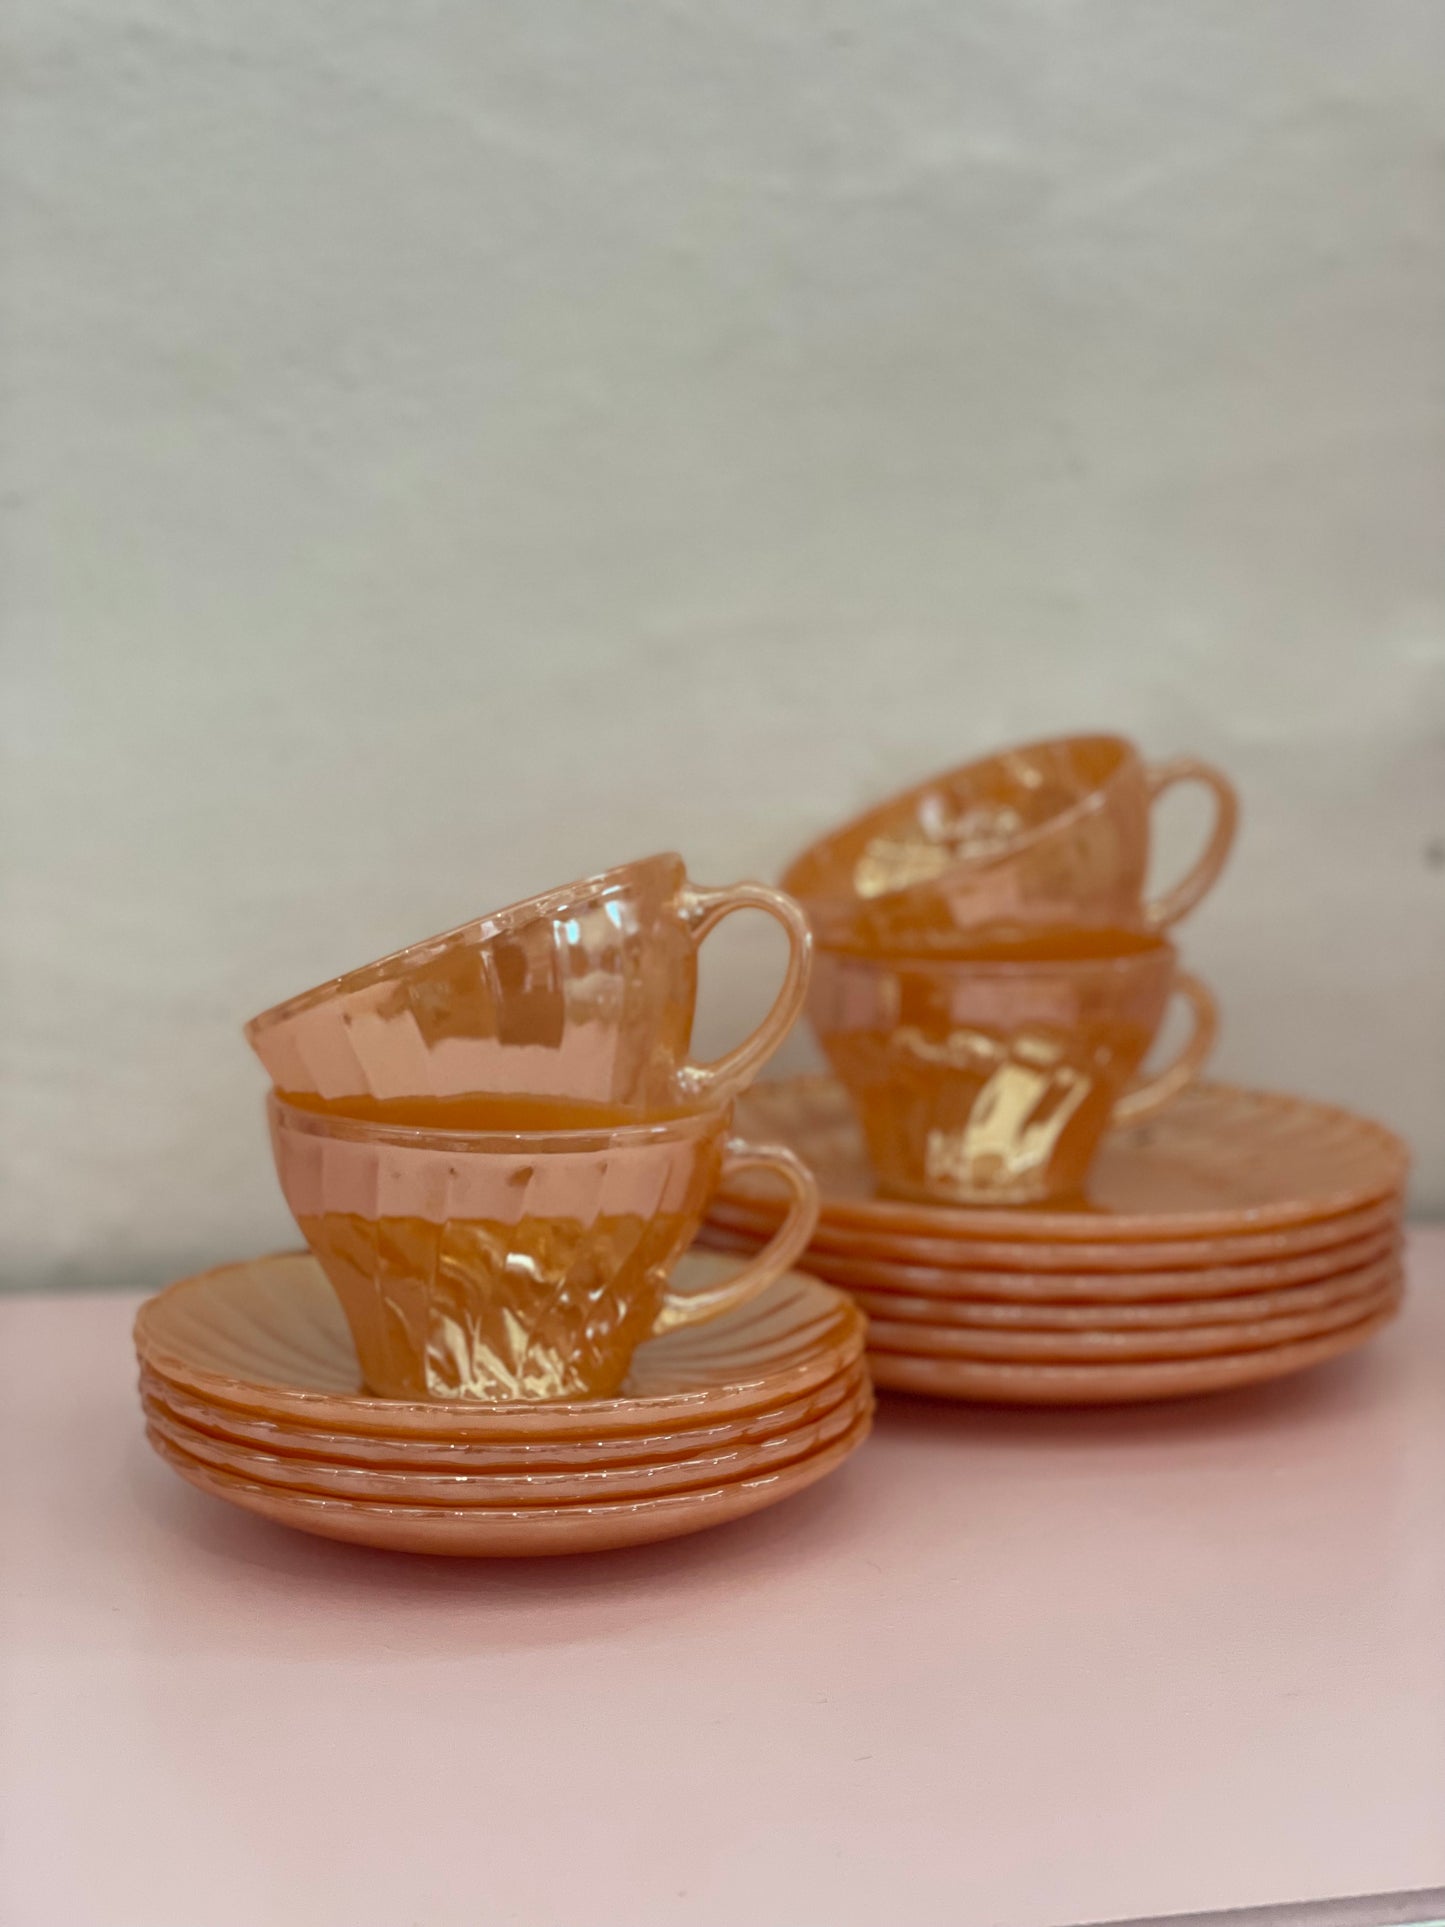 Ancher Hocking fireking teacups